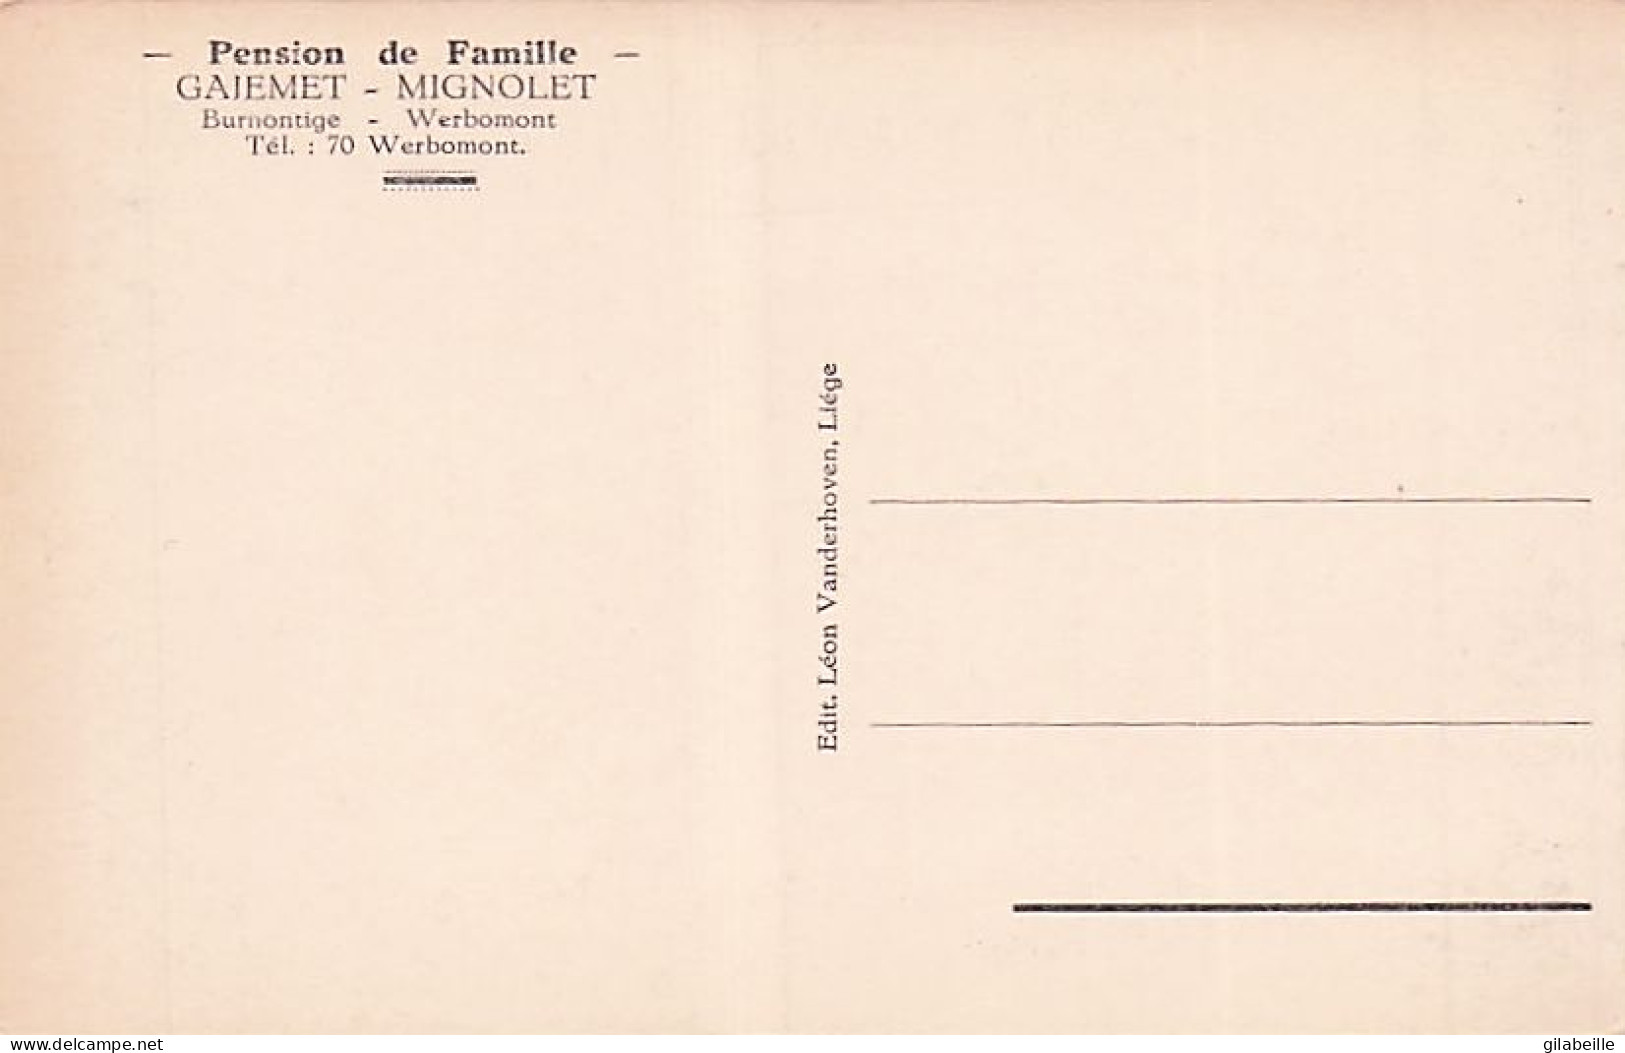 Ferrieres - BURNONTIGE -  Pension De Famille  - Gaiemet - Mignolet - Ferrières